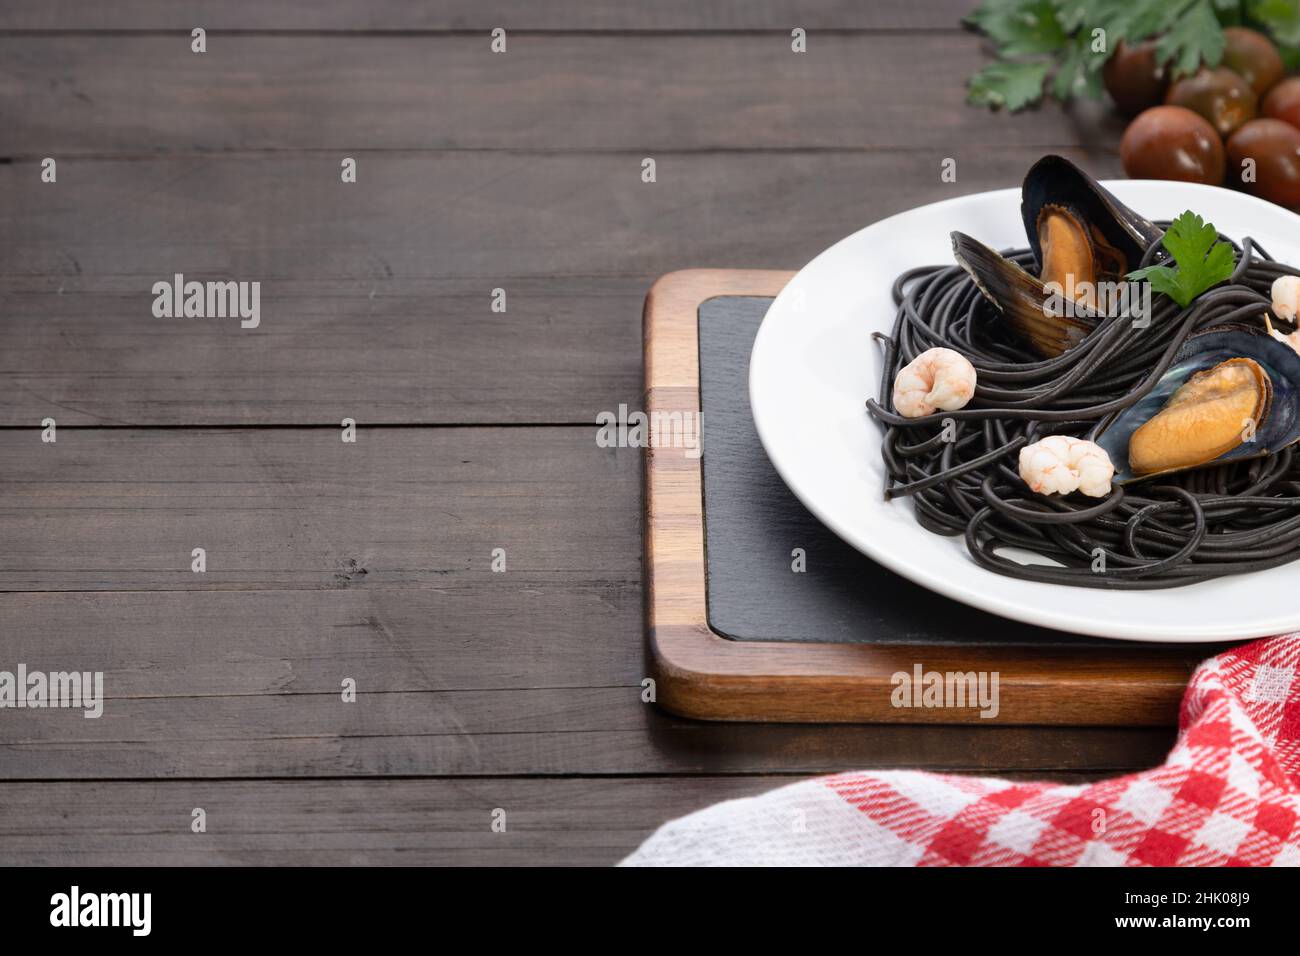 Piatto di pasta nera con frutti di mare su sfondo di legno con copyspace. Concetto di cucina mediterranea. Foto Stock